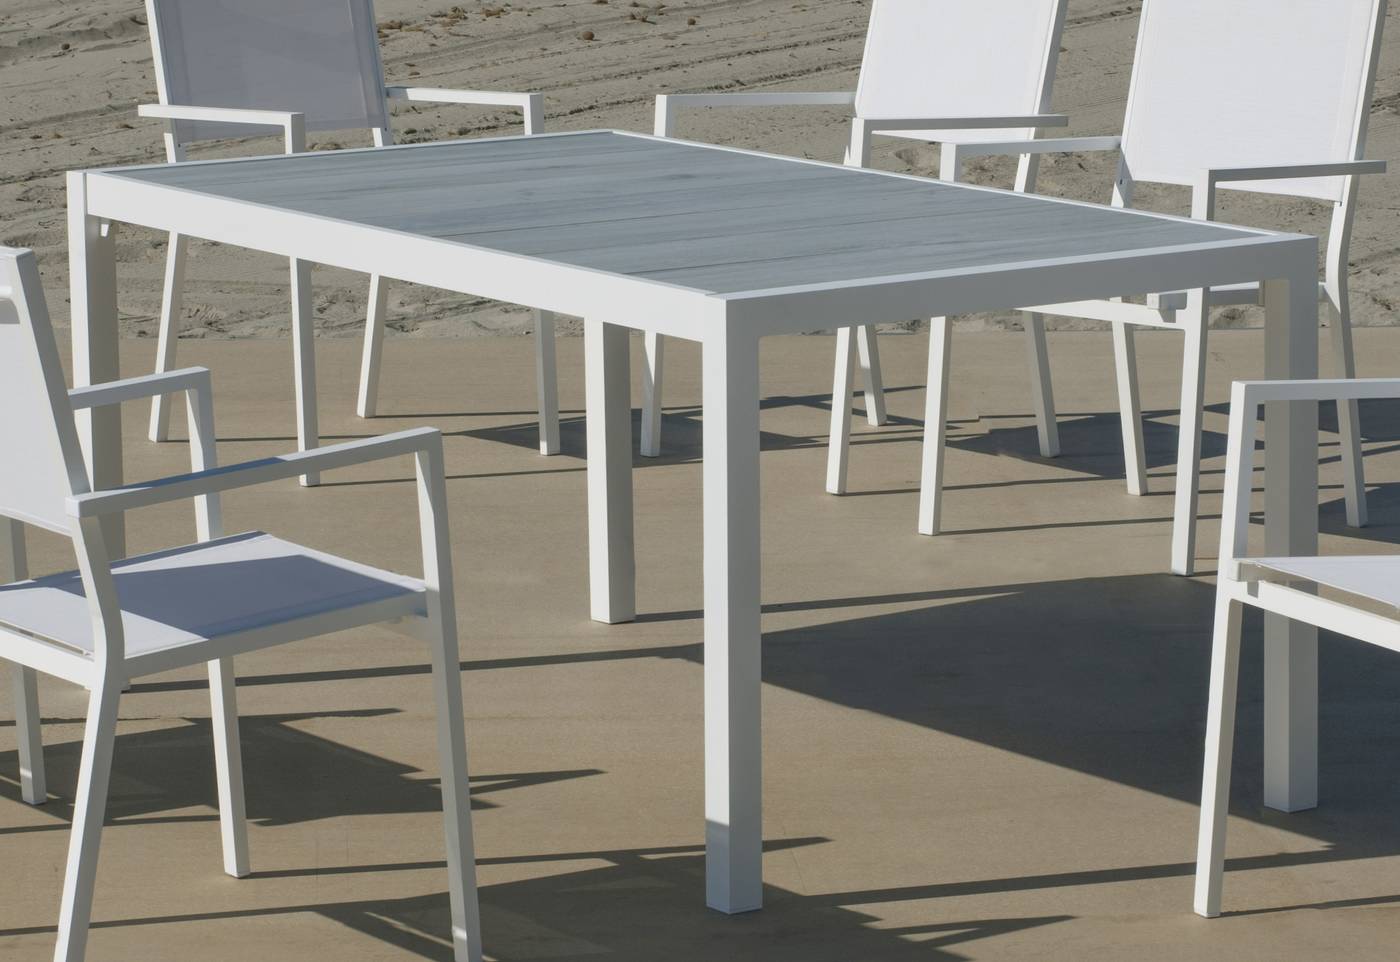 Mesa Palermo-160 - Mesa rectangular de aluminio, con tablero cerámico de 160 cm. Disponible en color blanco y antracita.